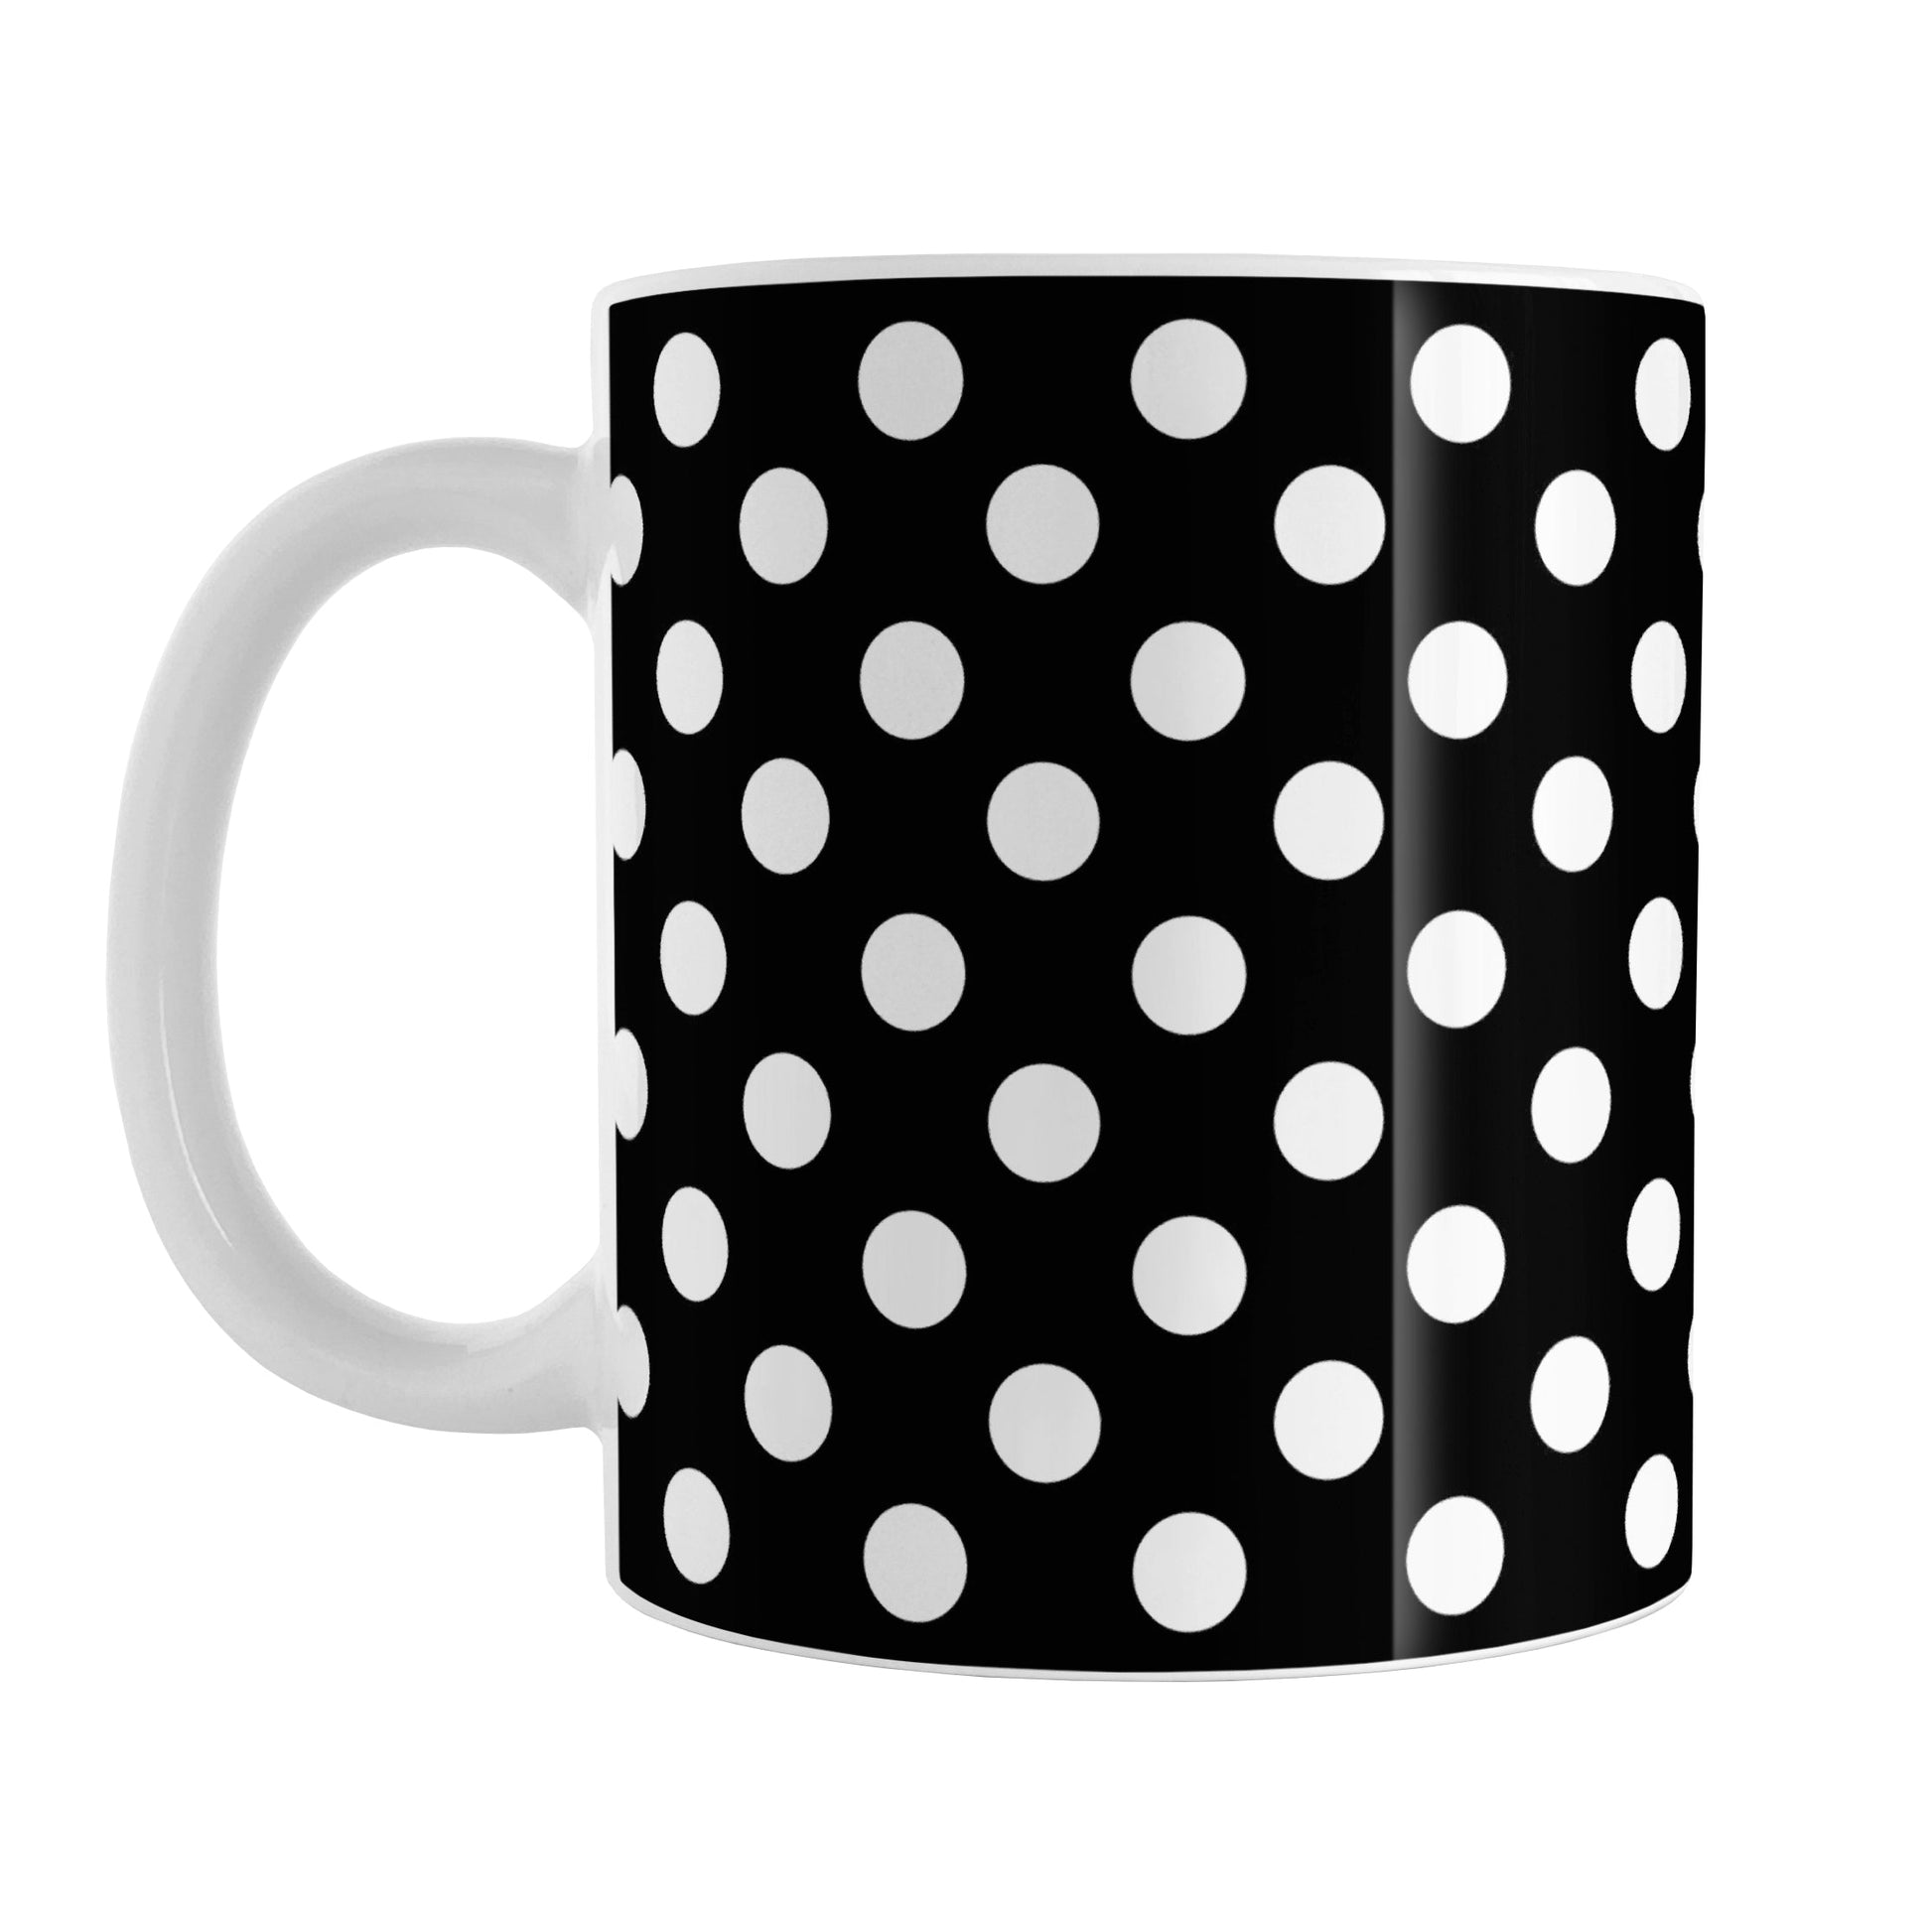 Black Polka Dot Mug (11oz) at Amy's Coffee Mugs